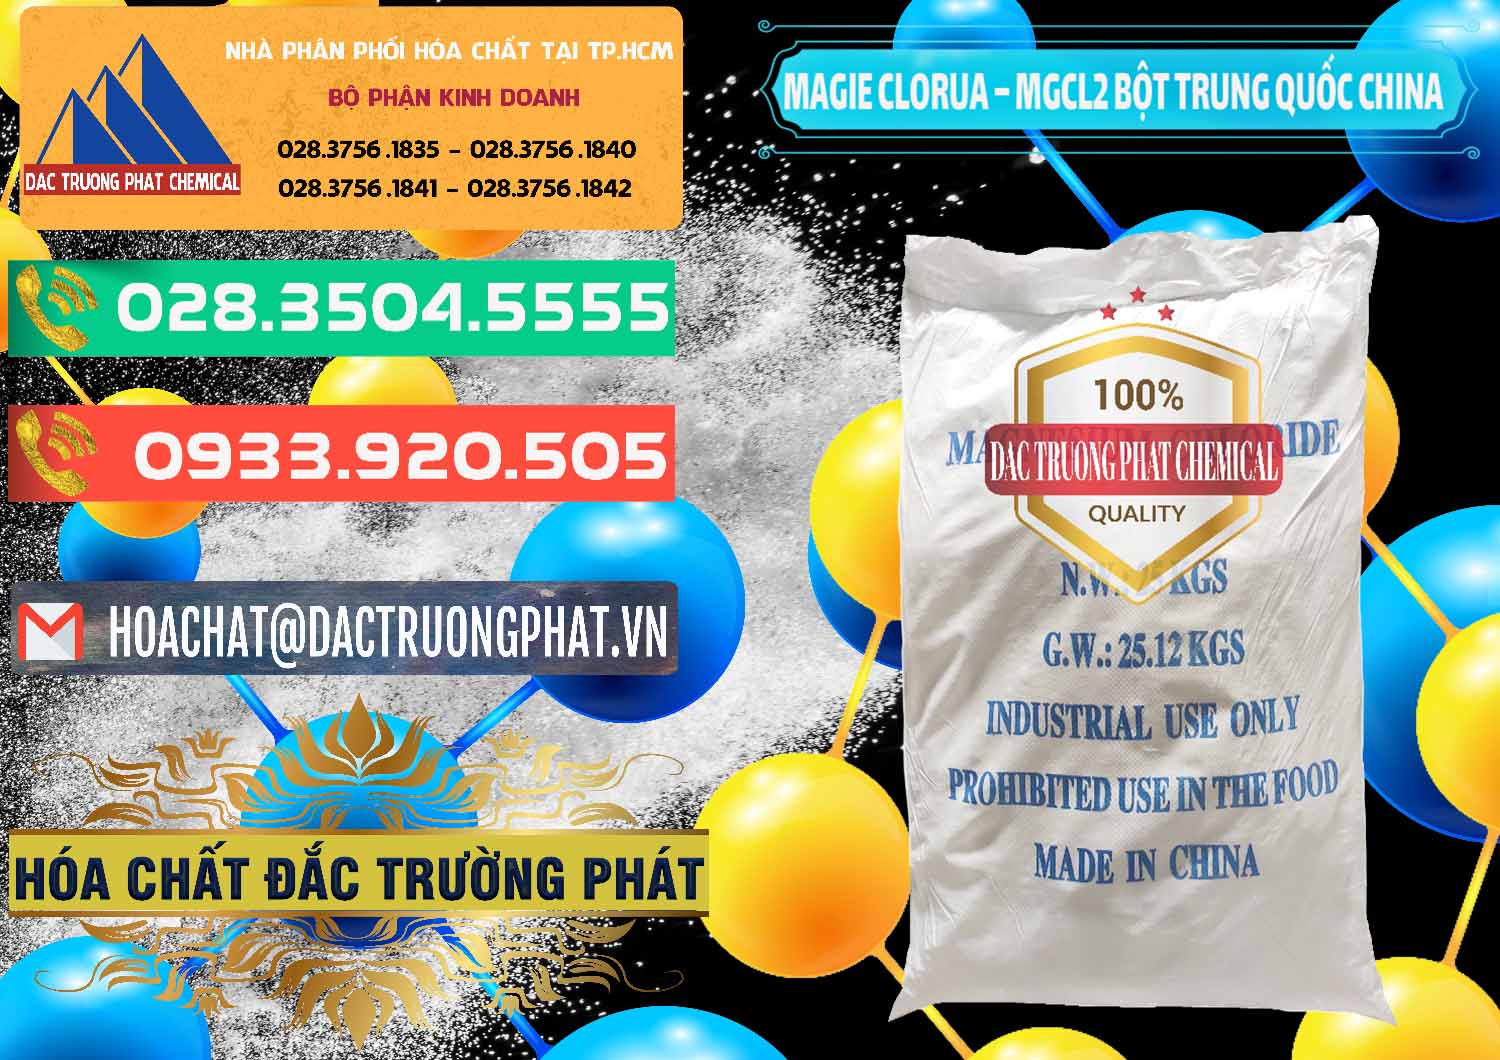 Cung cấp & bán Magie Clorua – MGCL2 96% Dạng Bột Bao Chữ Xanh Trung Quốc China - 0207 - Chuyên cung cấp và phân phối hóa chất tại TP.HCM - congtyhoachat.com.vn